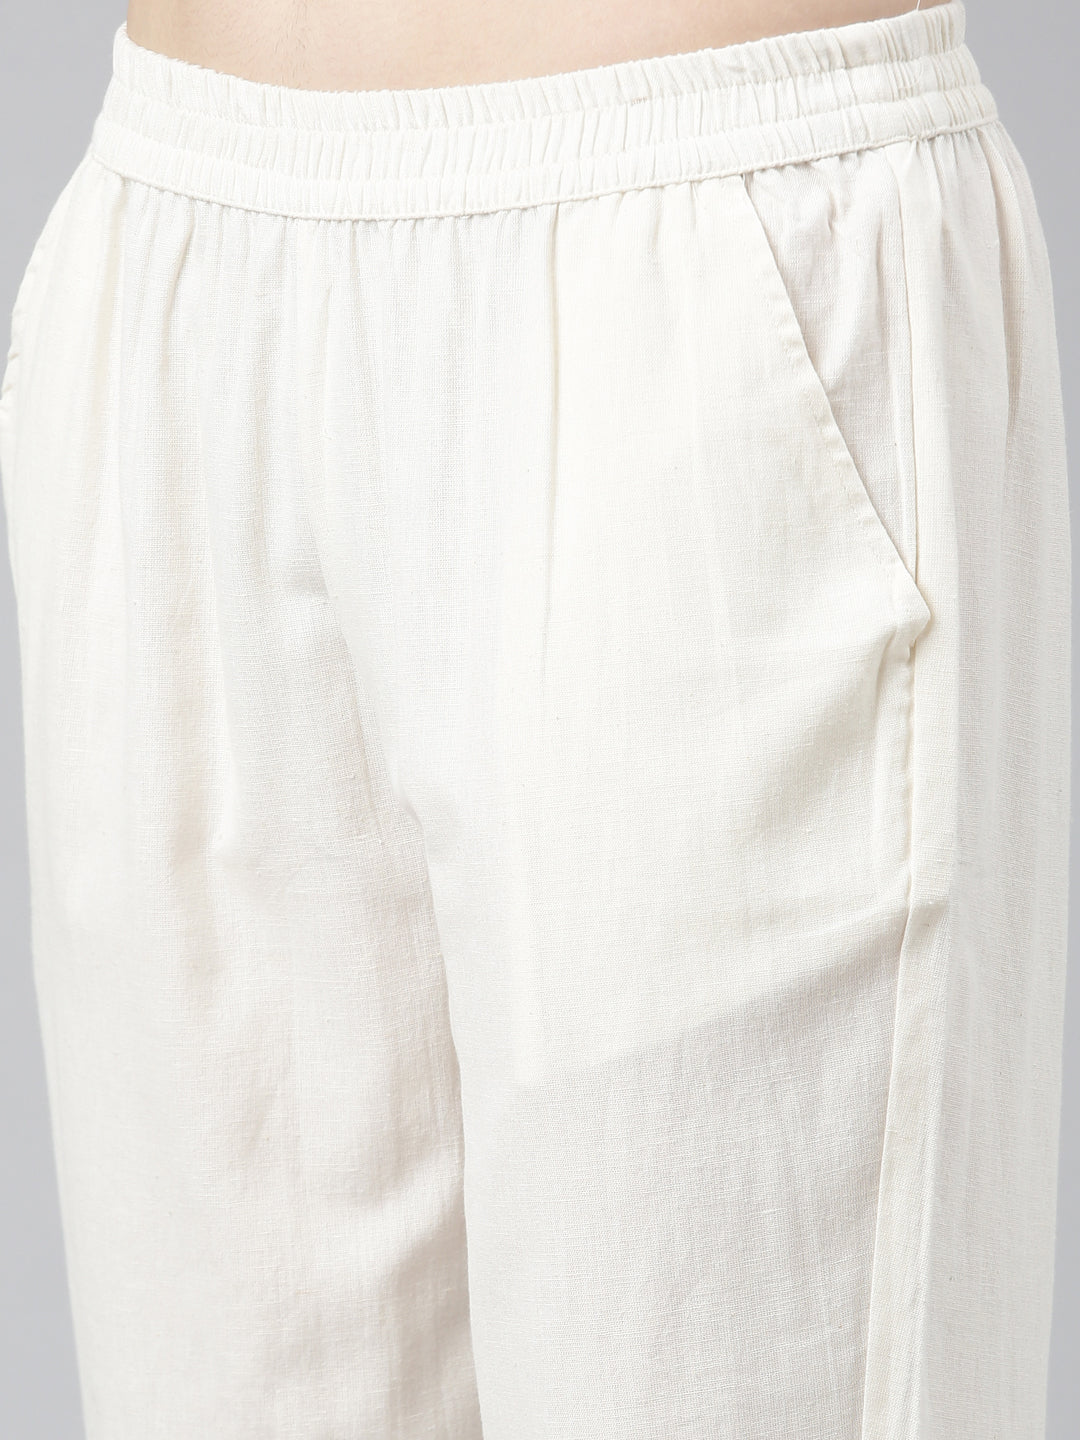 Neerus Off White Regular Straight Printed Kurta And Trousers